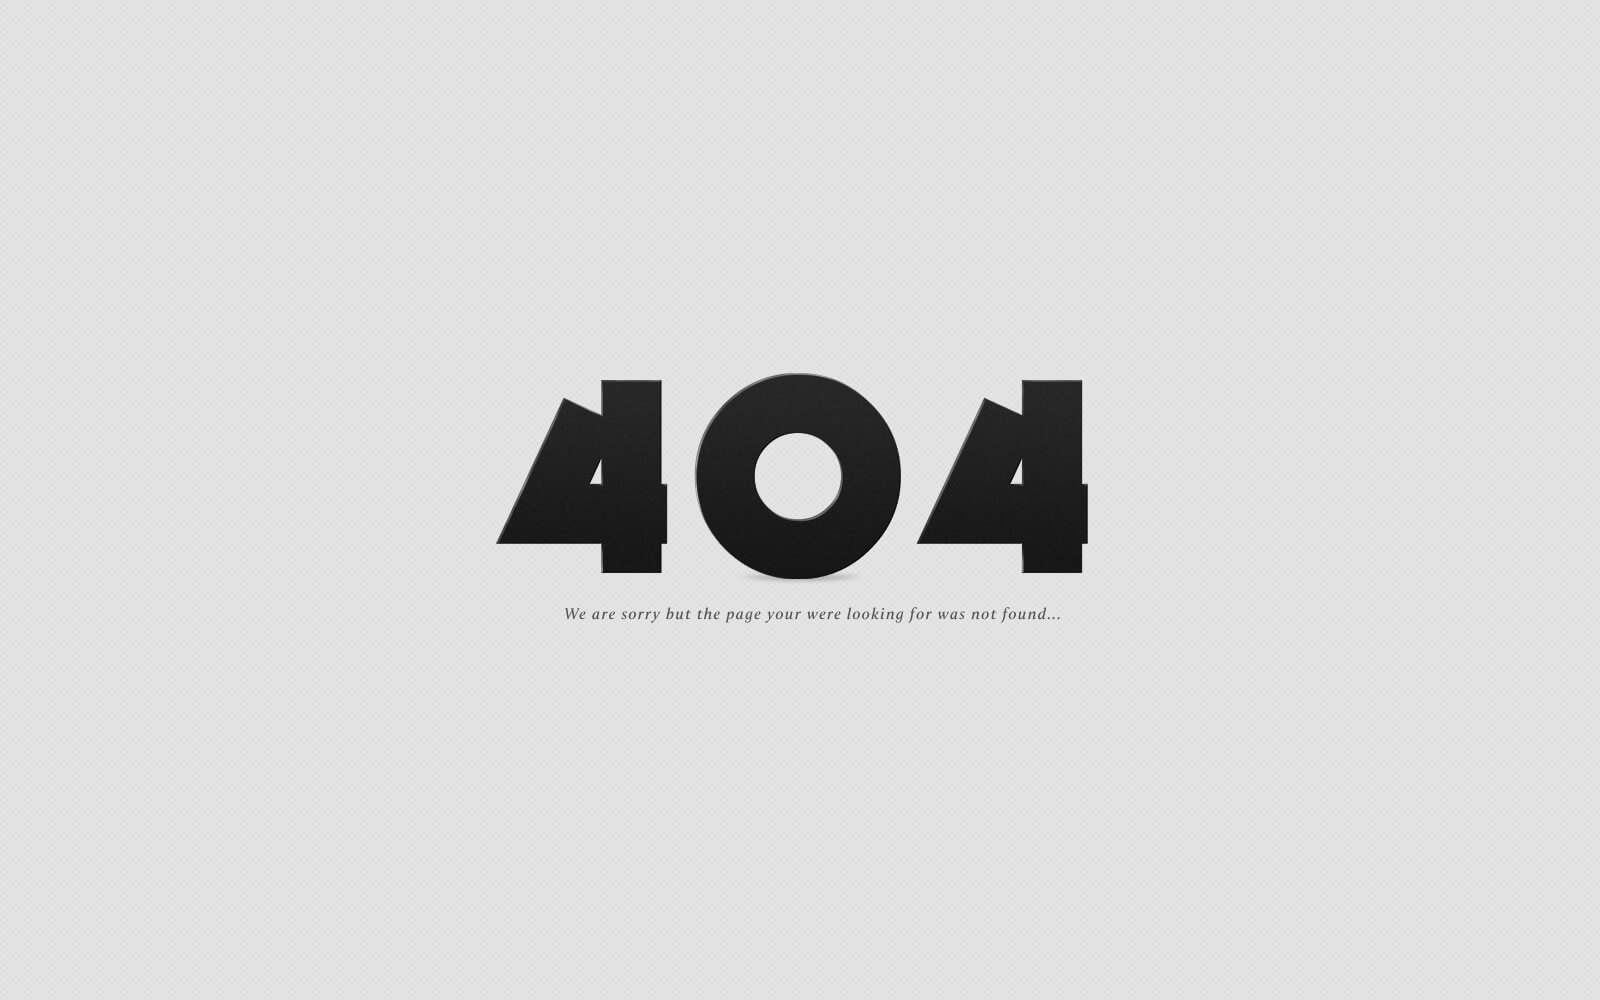 404 hatası